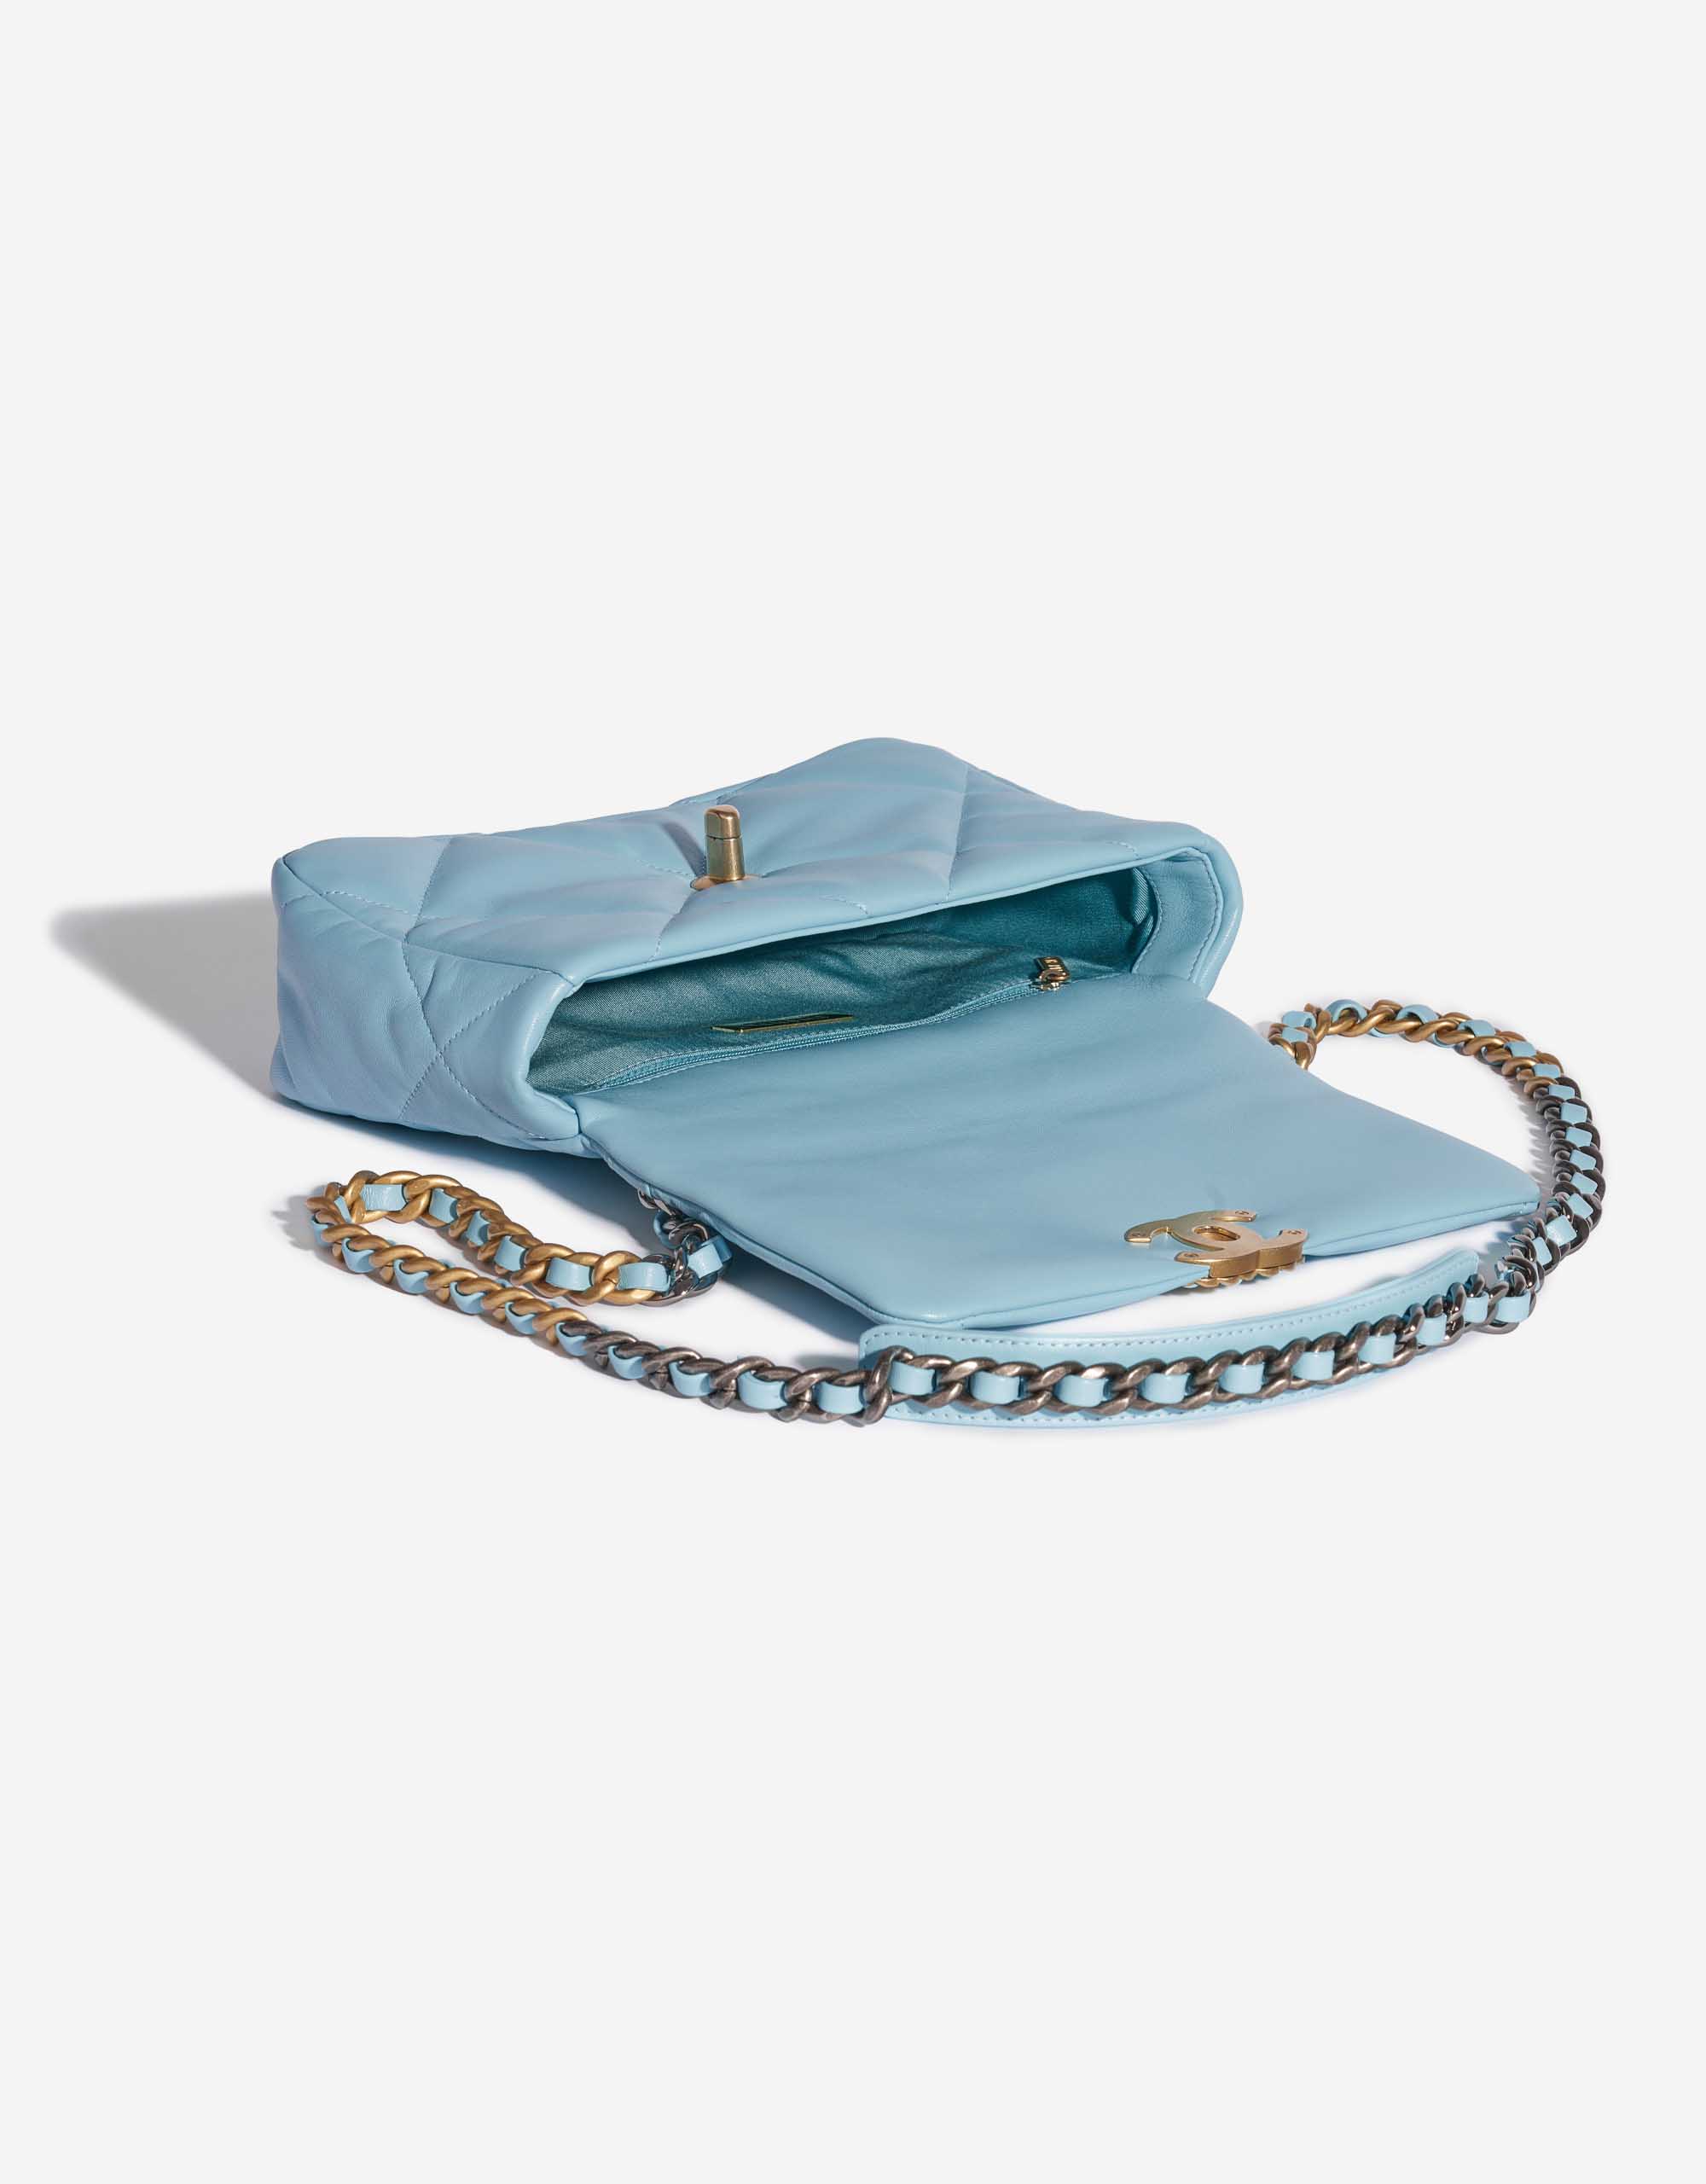 Pre-owned Chanel Tasche 19 Flap Bag Lammleder Sky Blue Blue Inside | Verkaufen Sie Ihre Designer-Tasche auf Saclab.com